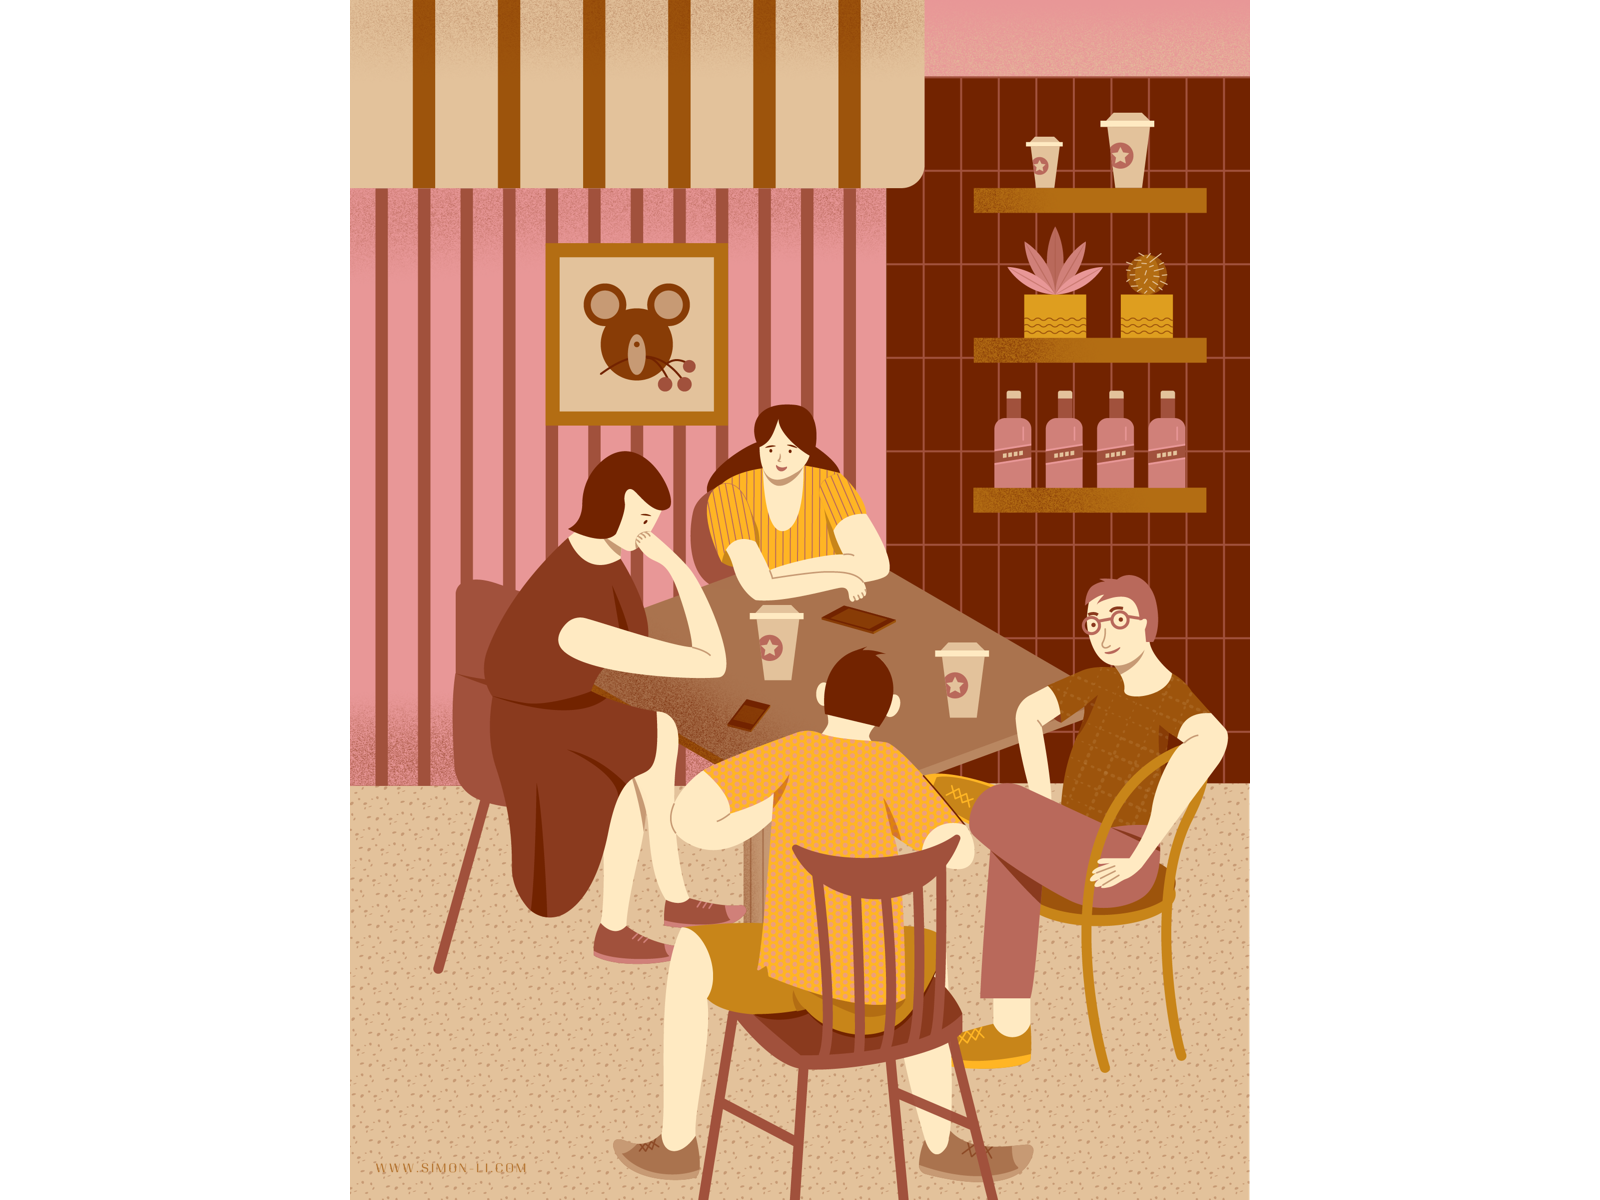 Dribbble - coffee_shop.png by Simon Li